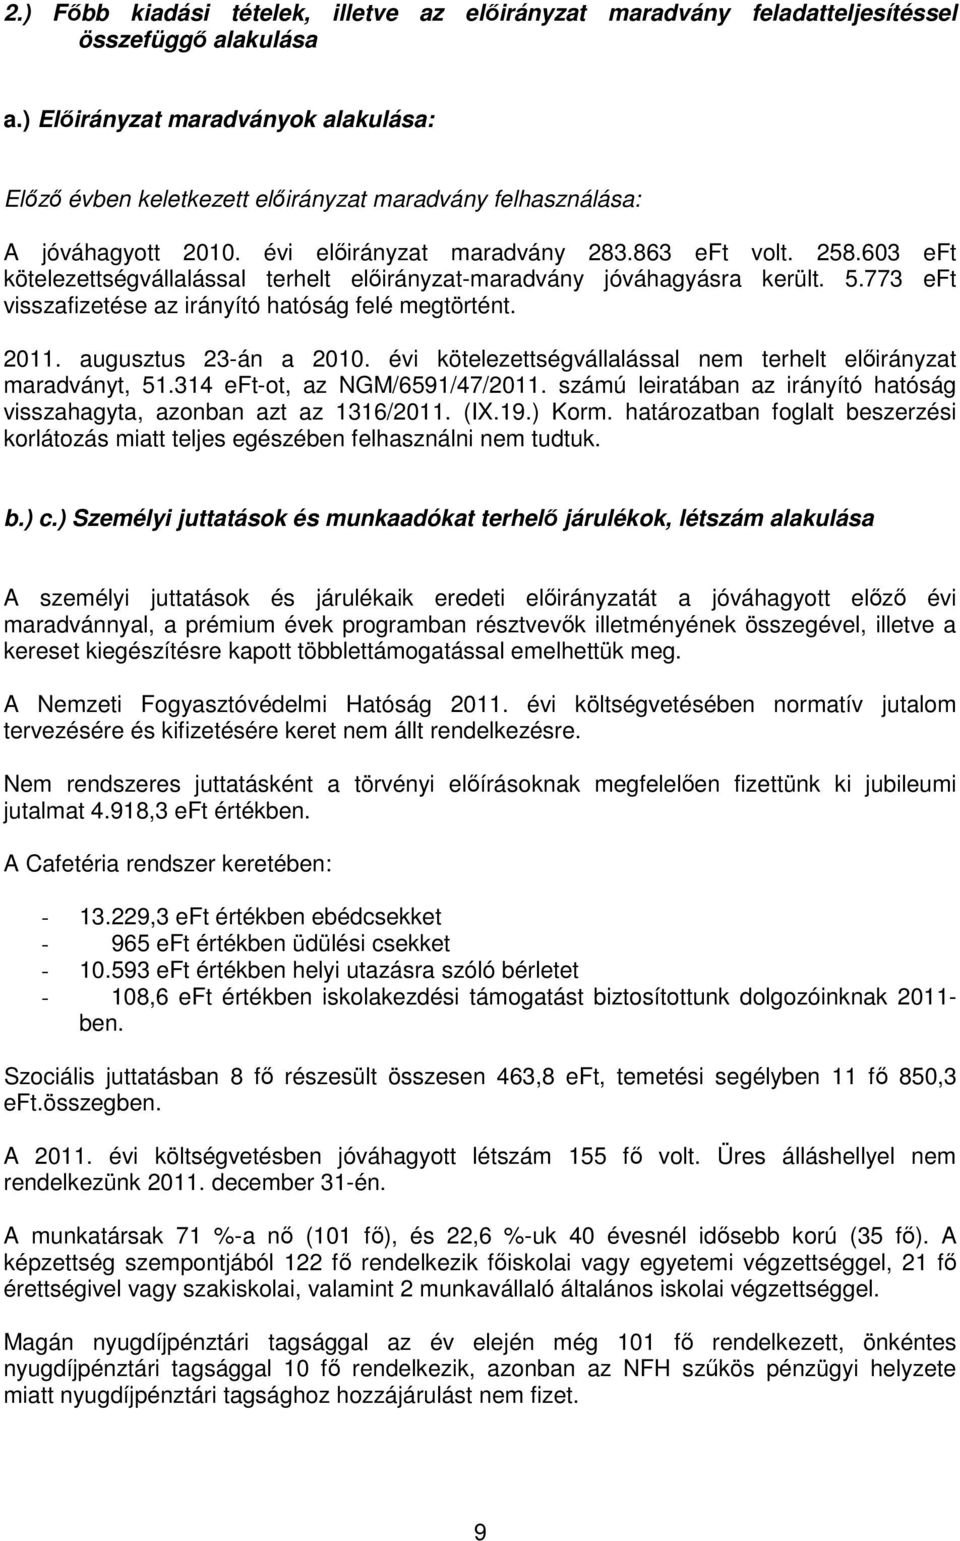 603 eft kötelezettségvállalással terhelt elıirányzat-maradvány jóváhagyásra került. 5.773 eft visszafizetése az irányító hatóság felé megtörtént. 2011. augusztus 23-án a 2010.